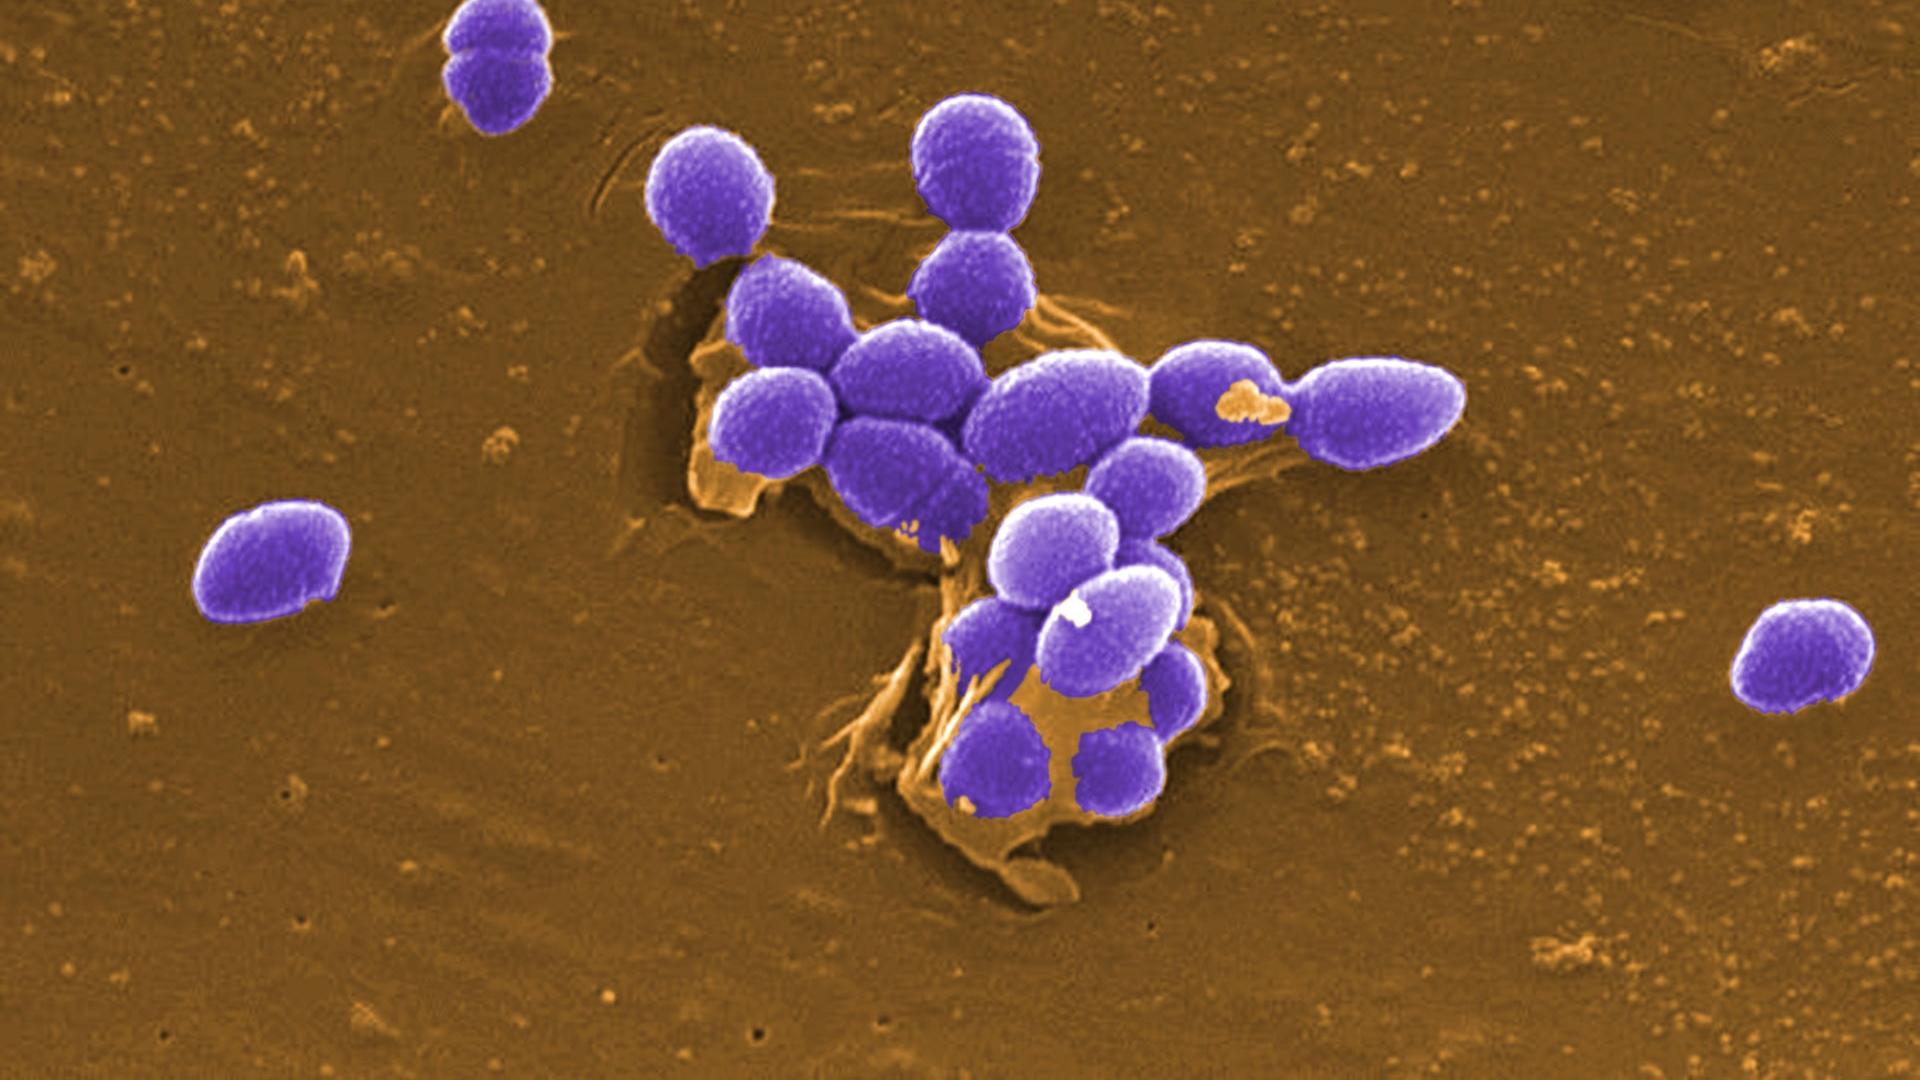 Сахарозаменители повысили патогенность кишечных бактерий